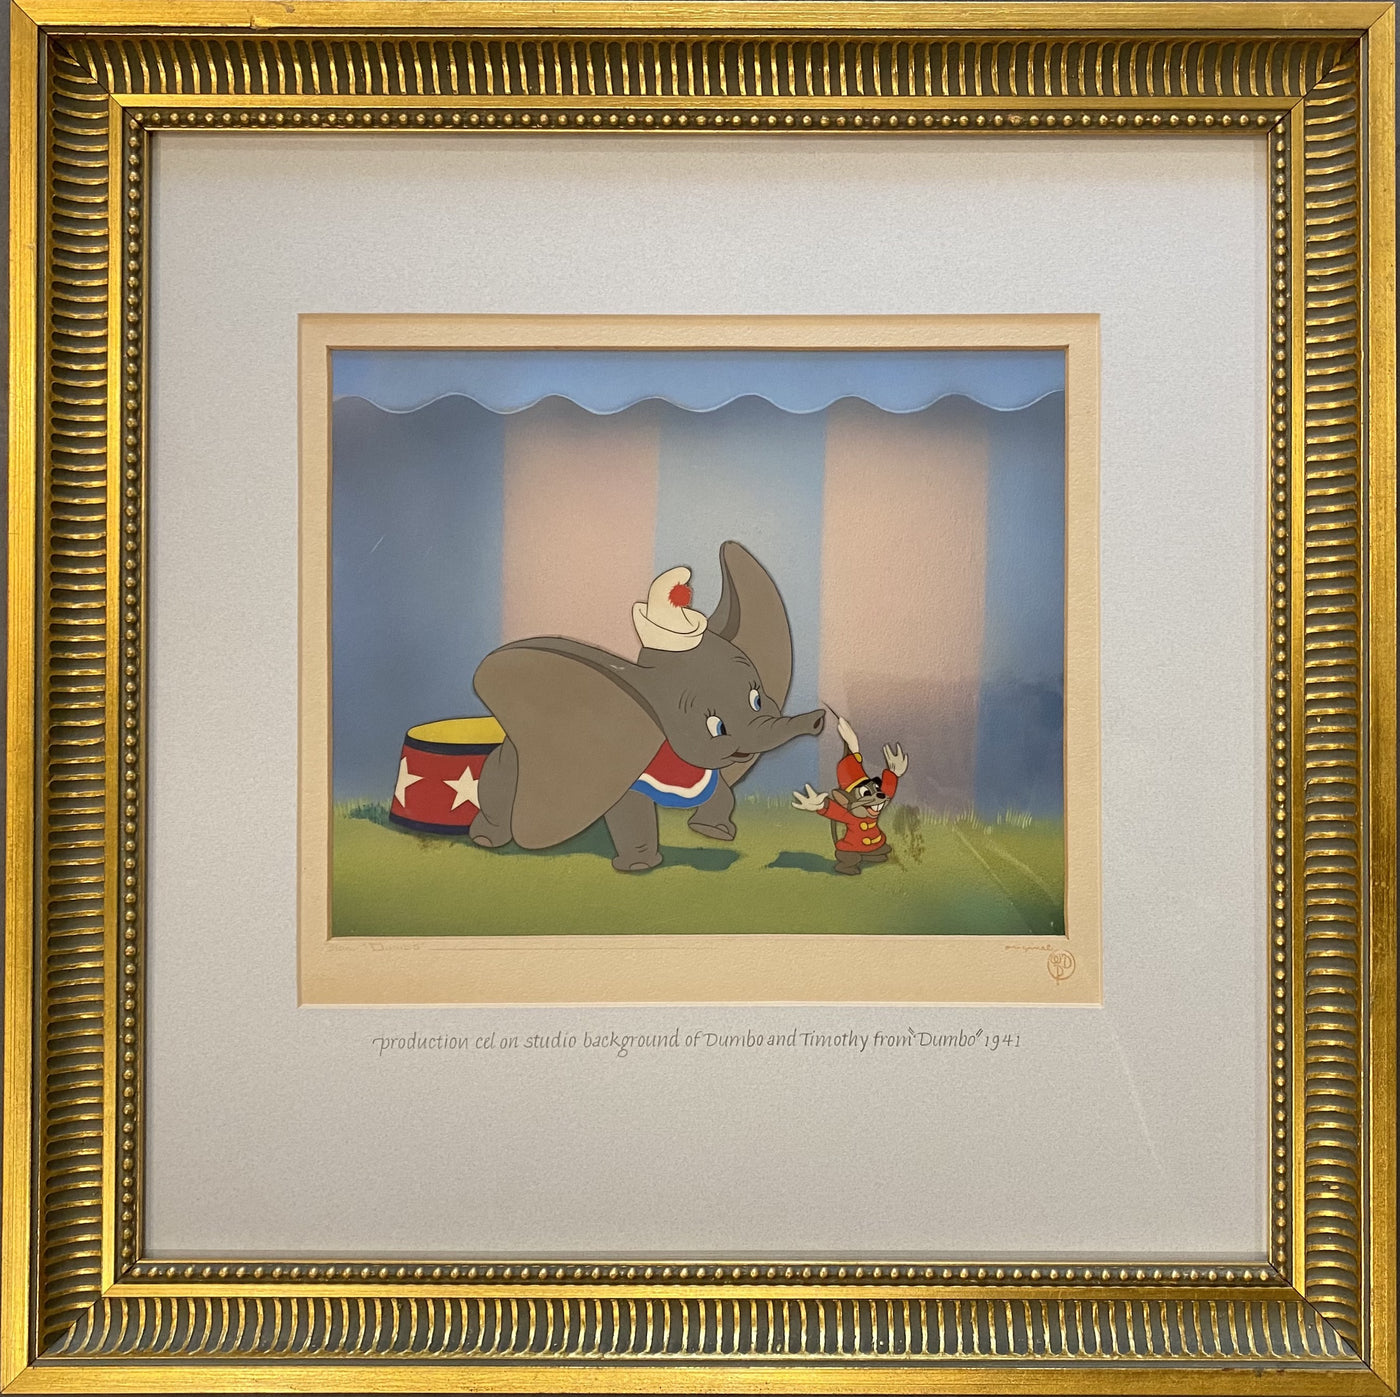 Original Walt Disney Publicity Cel on Disney Art Props Studio Background from Dumbo